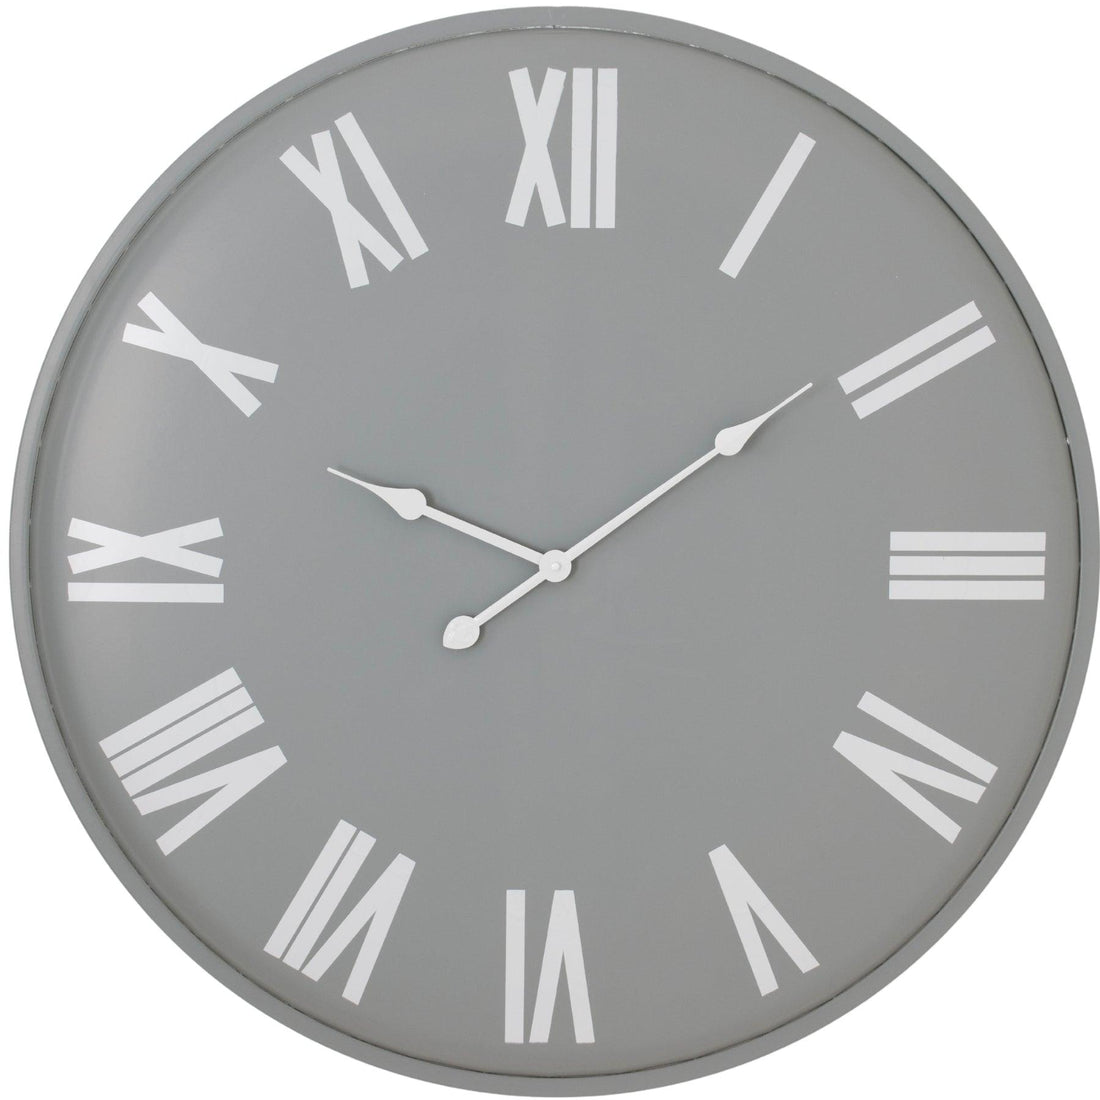 Rothay Large Wall Clock - £144.95 - Wall Clocks 